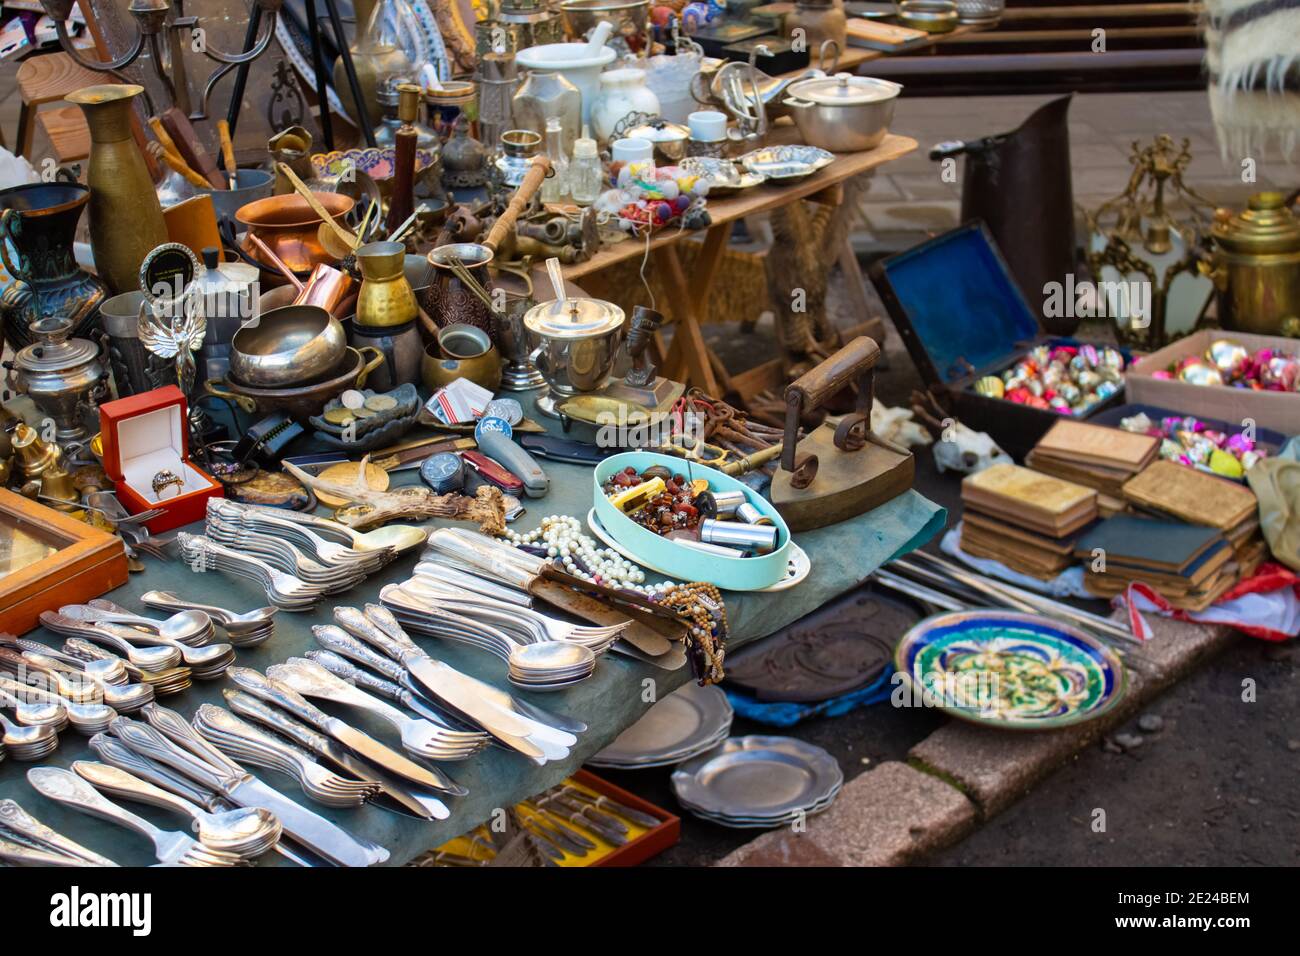 Diversi oggetti d'antiquariato sul mercato delle pulci - antiche sculture d'argento - cucchiai, coltelli, forcelle e altre cose d'epoca. Oggetti da collezione e garage Foto Stock